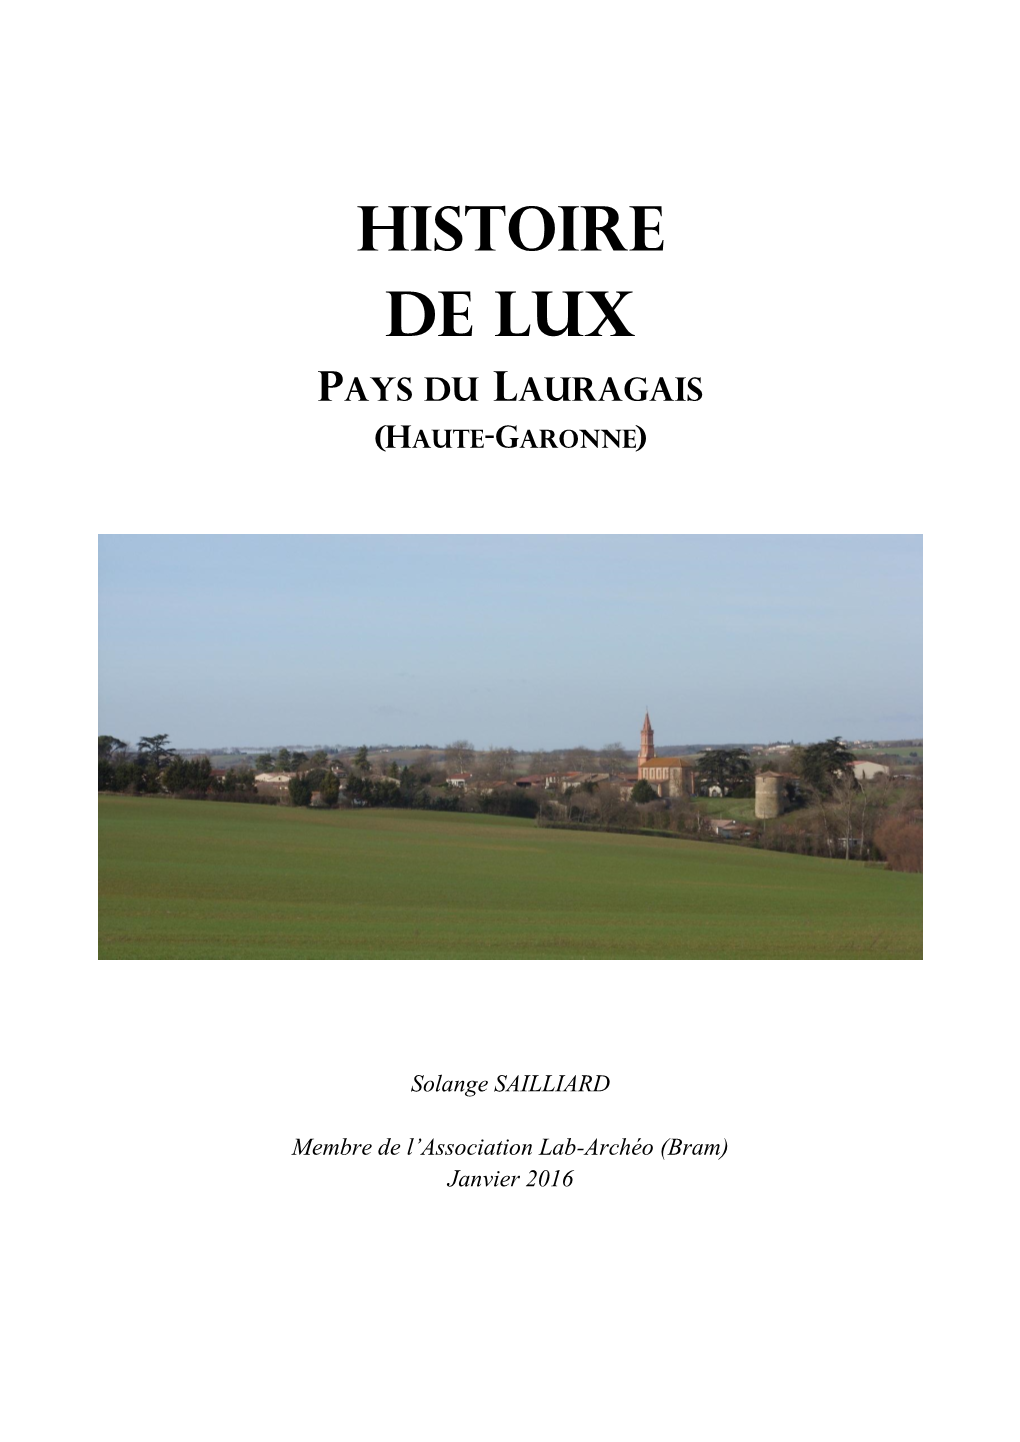 Histoire De Lux (Haute-Garonne)